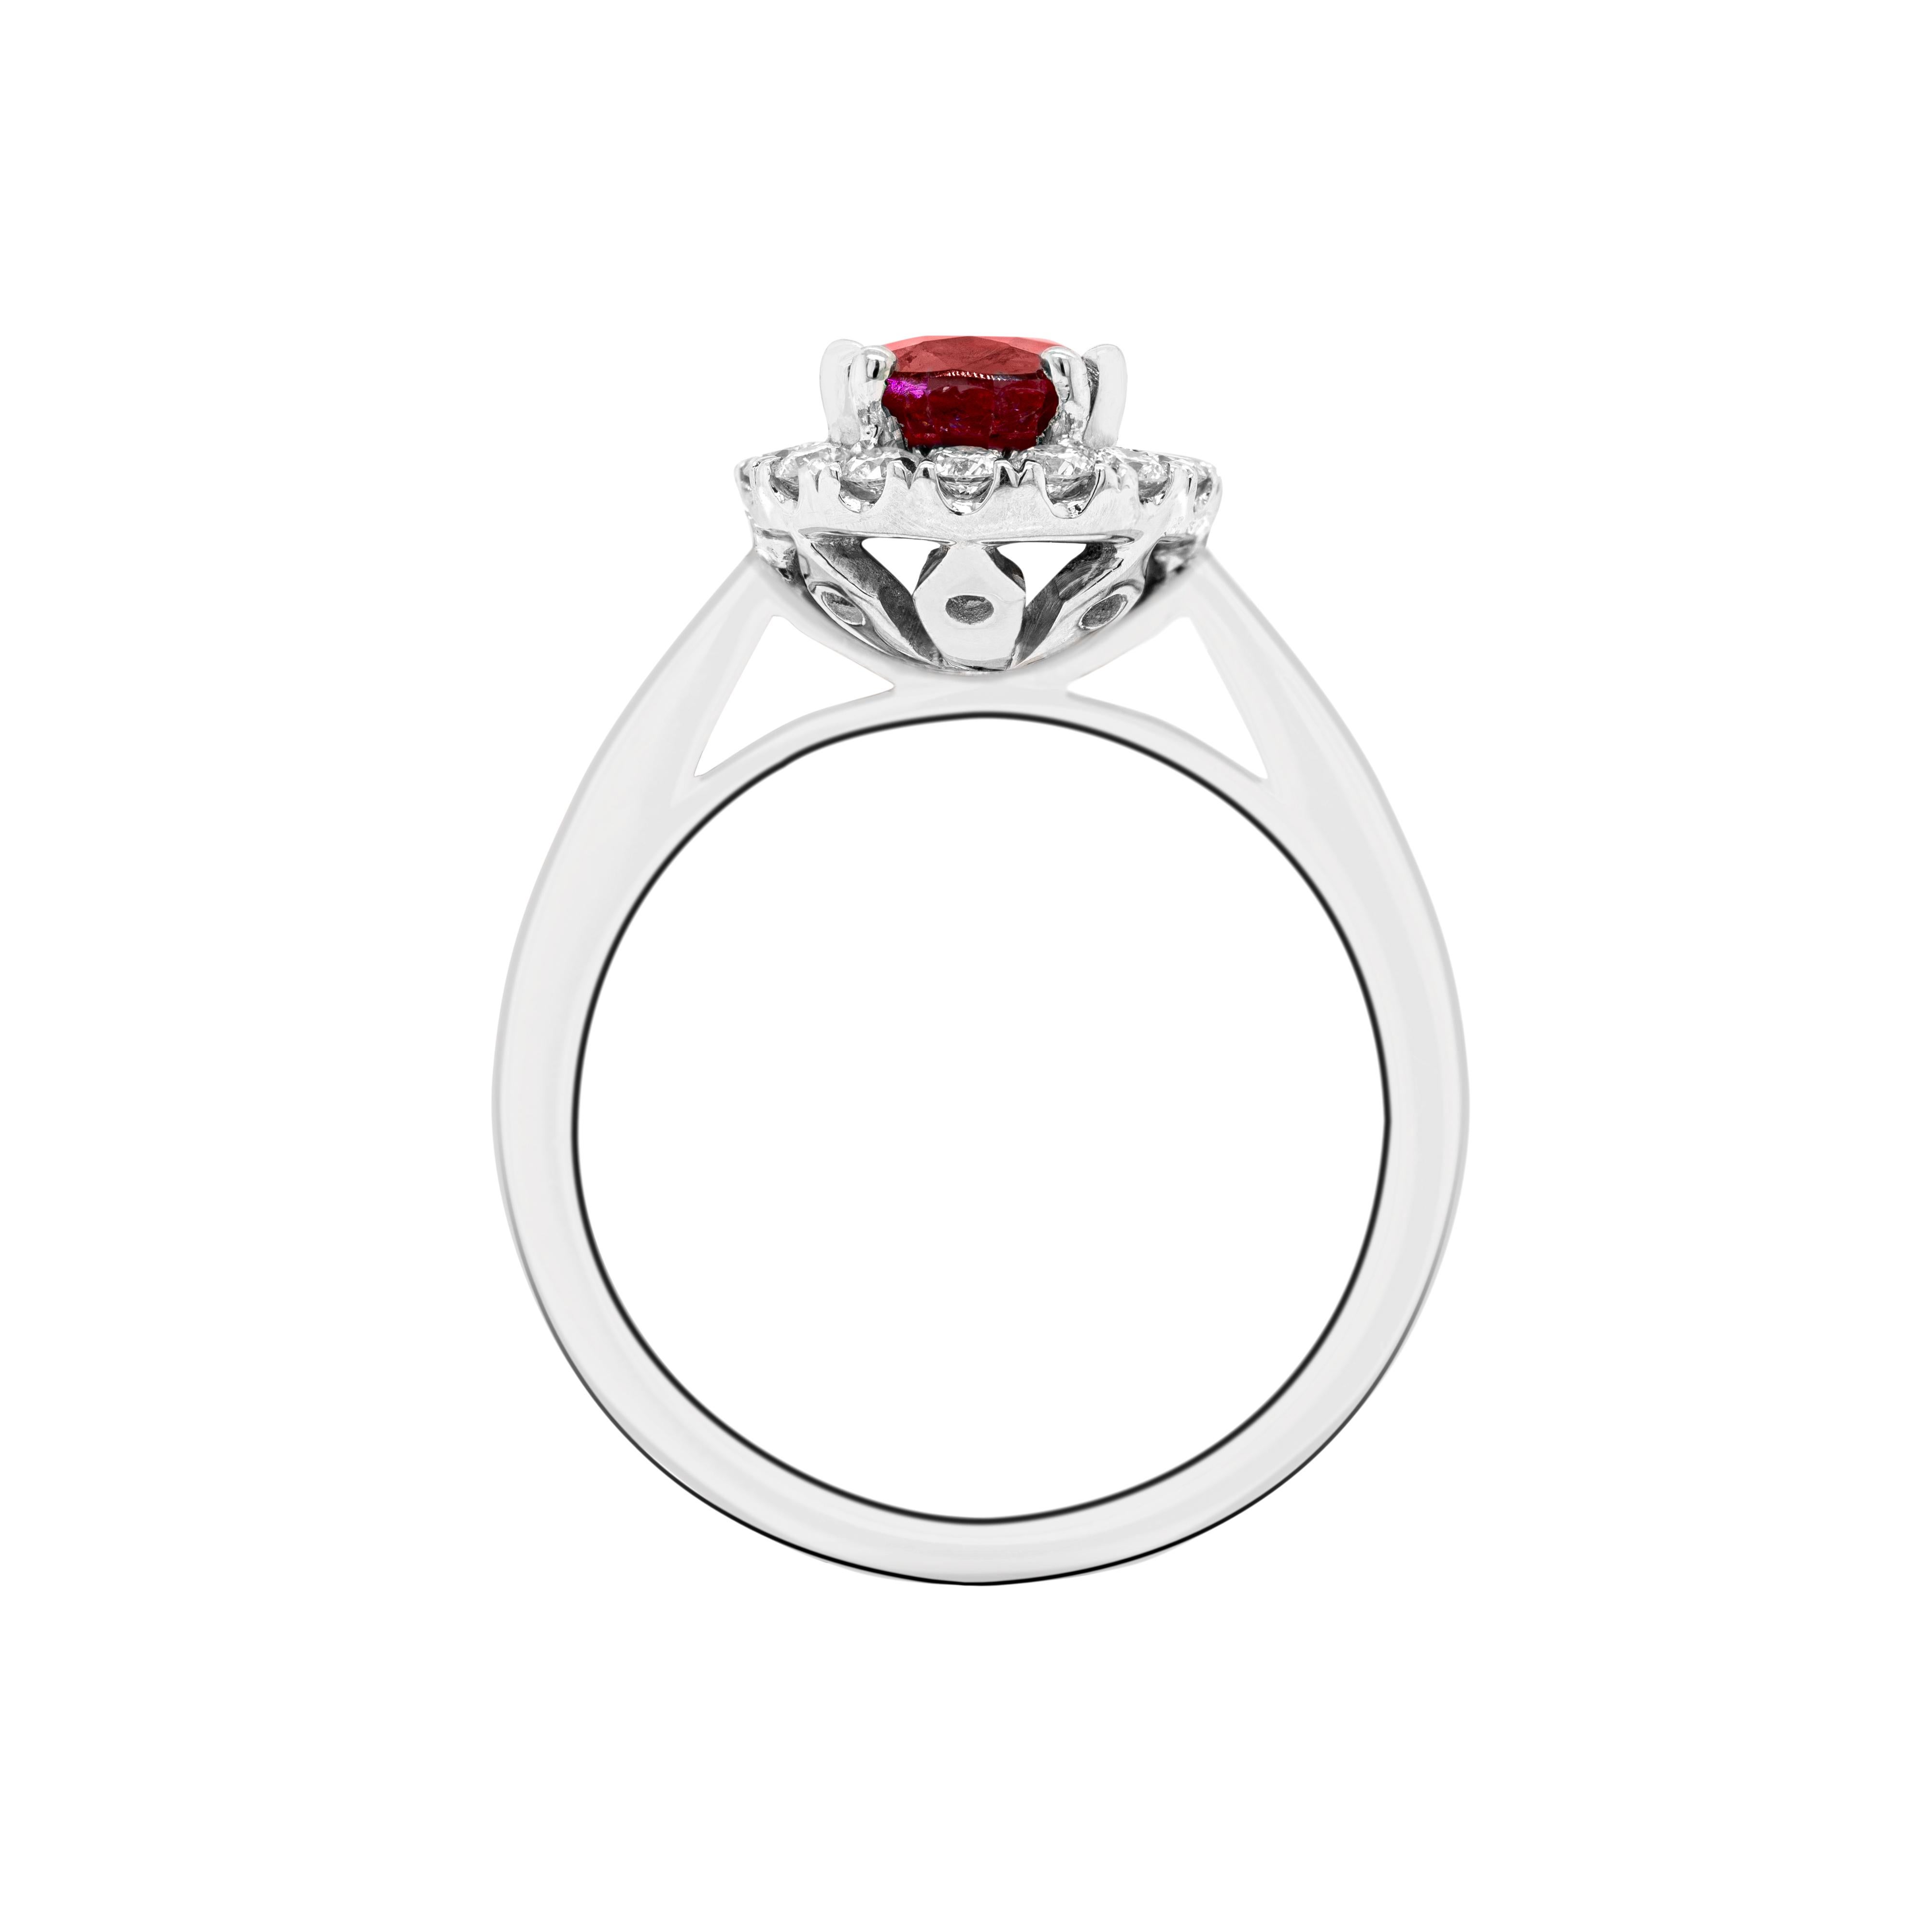 Dieser wunderschöne Verlobungsring enthält einen ovalen, lebhaften roten Rubin von 1,99 Karat, der in einer offenen Fassung mit vier Doppelkrallen gefasst ist. Der prächtige Rubin ist von einem Halo aus 16 in Platin gefassten, runden Diamanten im